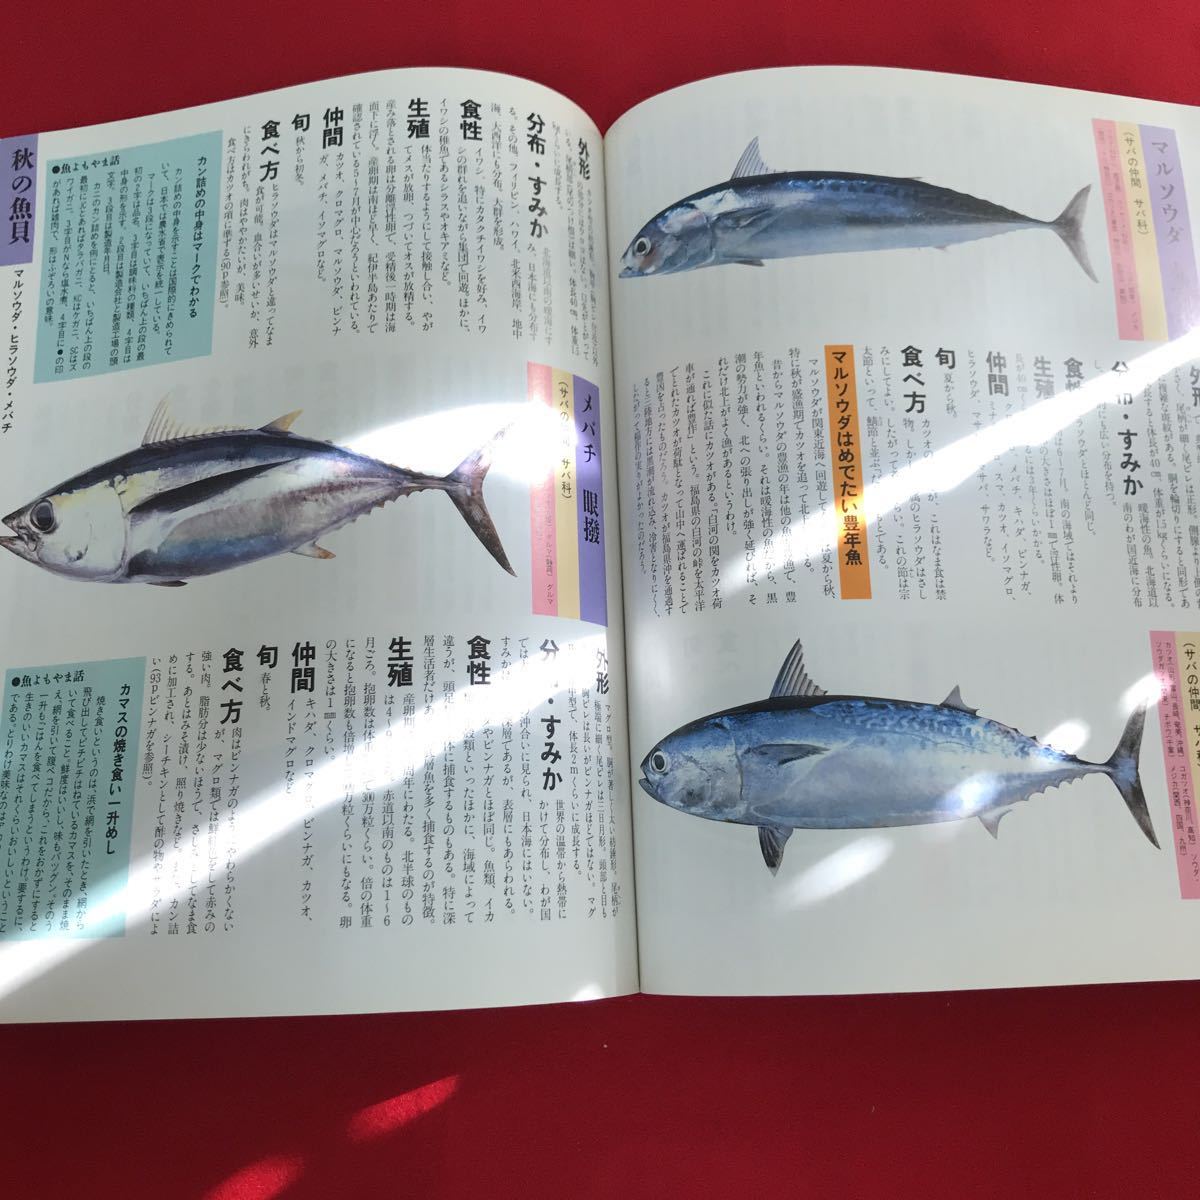 e-015 生態 食べ方 おもしろ話 蘊蓄がいっぱい 読む図鑑 魚と貝 カラー 百科 付録無し ※12_画像6